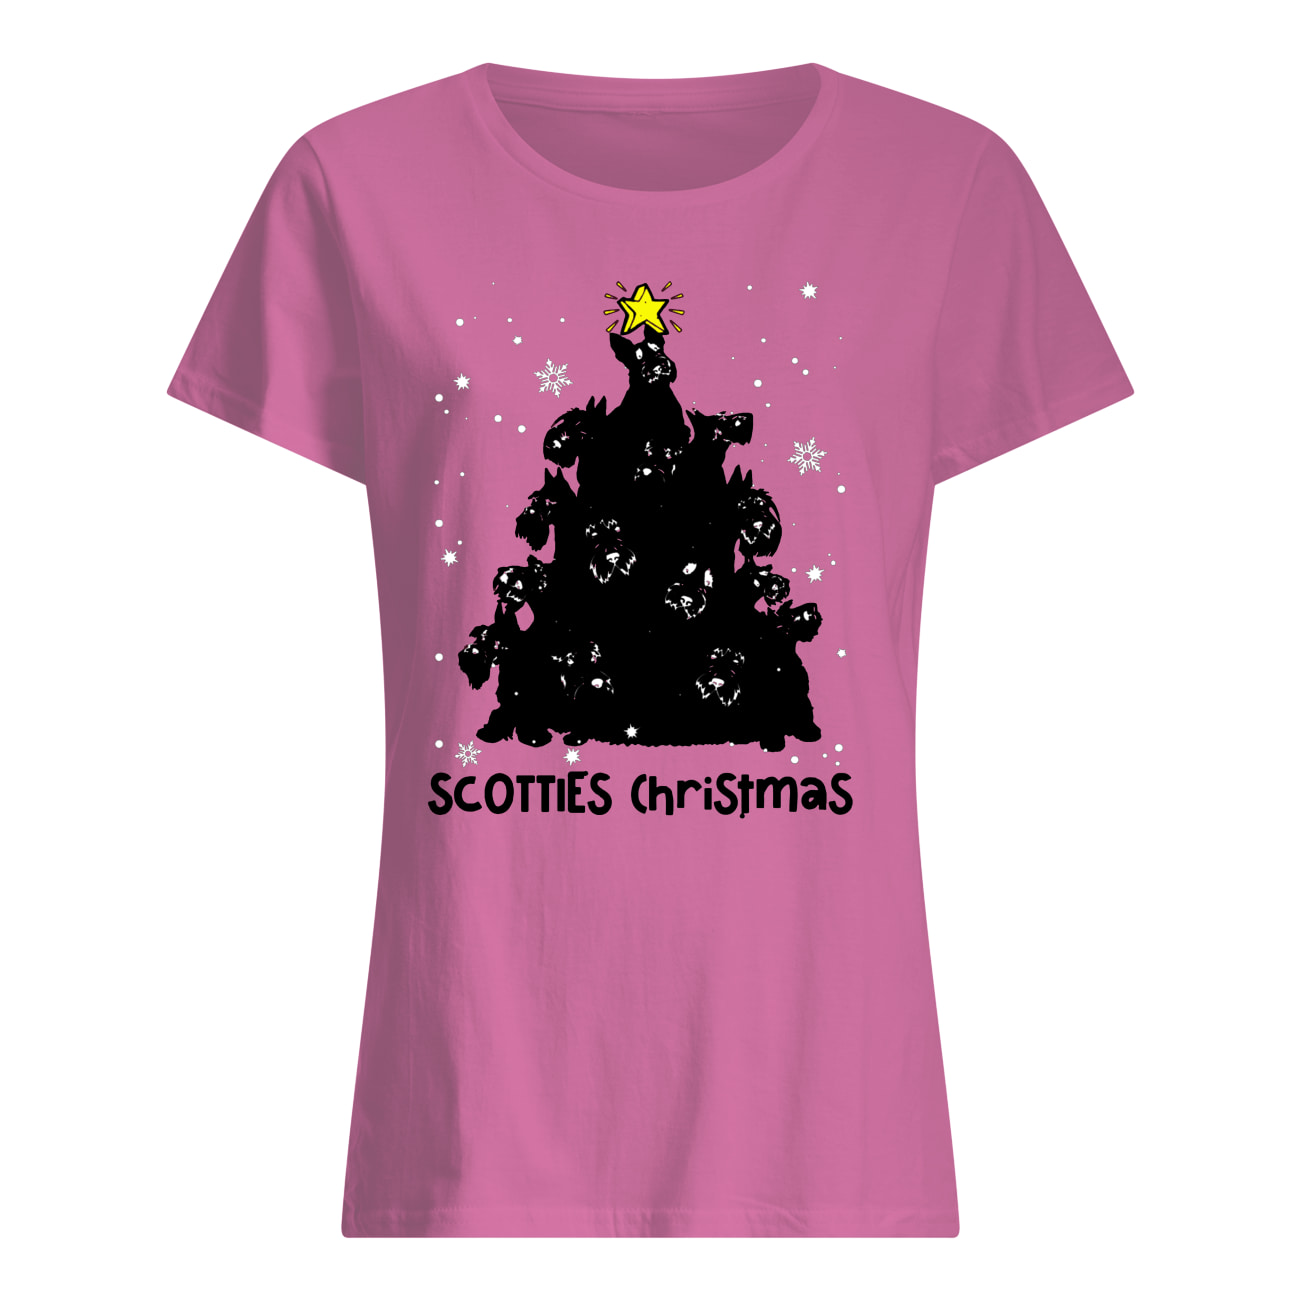 Scotties christmas tree women's shirt